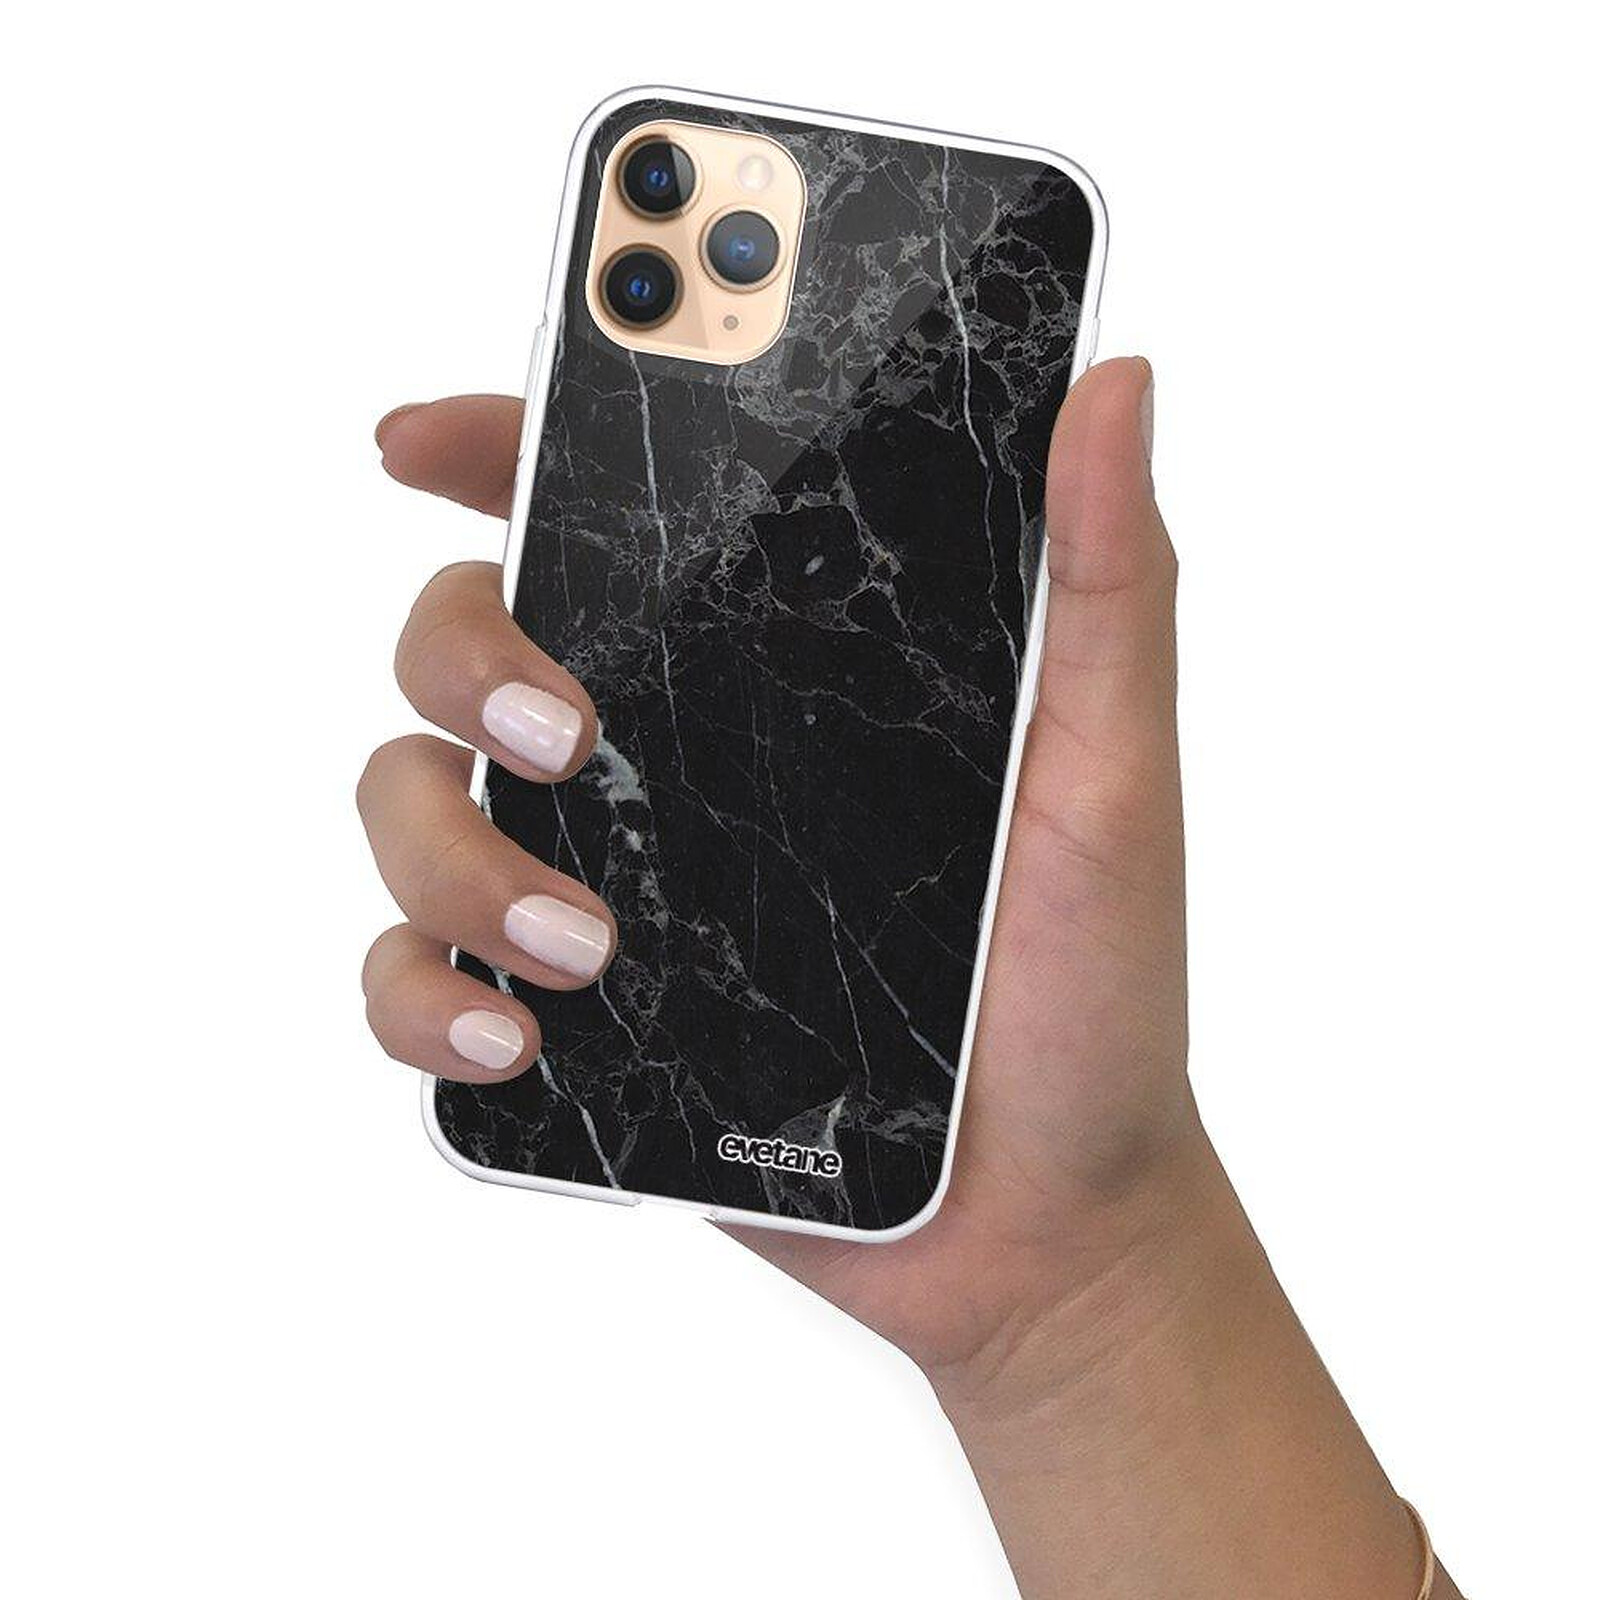 Evetane Coque iPhone 11 Pro Max silicone transparente Motif Chute De Fleurs  ultra resistant - Coque téléphone - LDLC